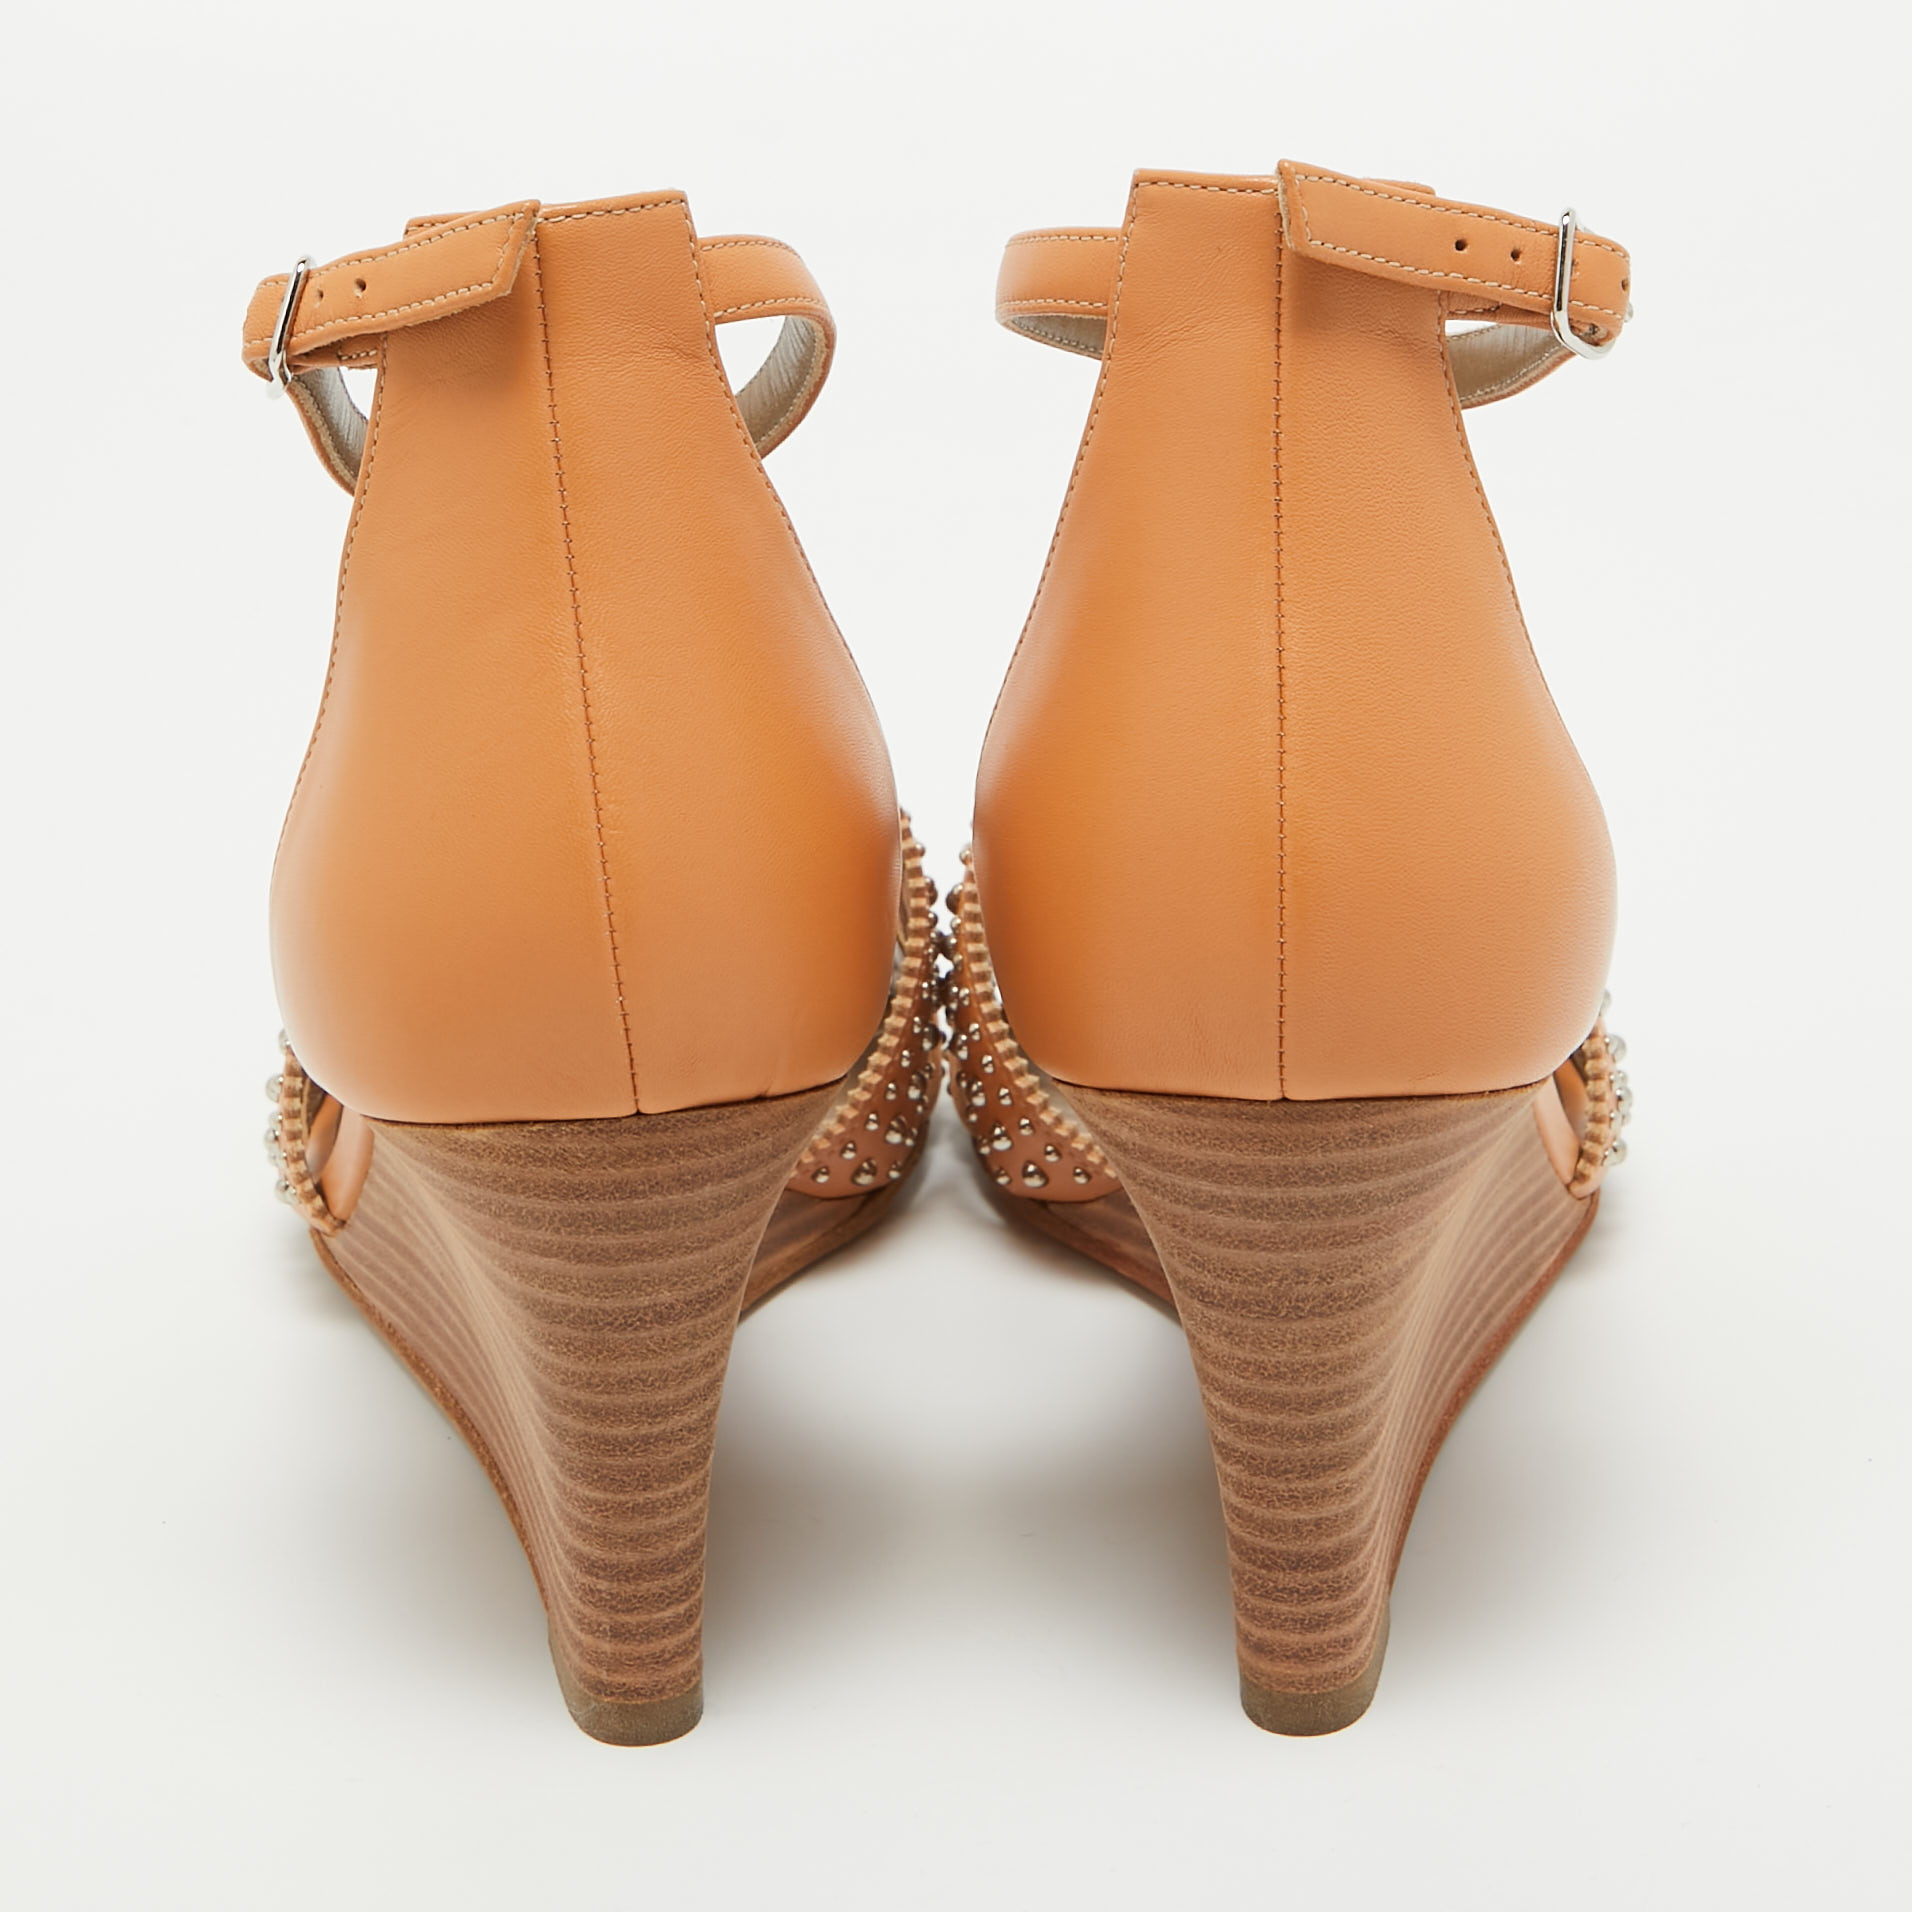 Hermes Orange Studded Leather Legend Wedge Sandals Size 40